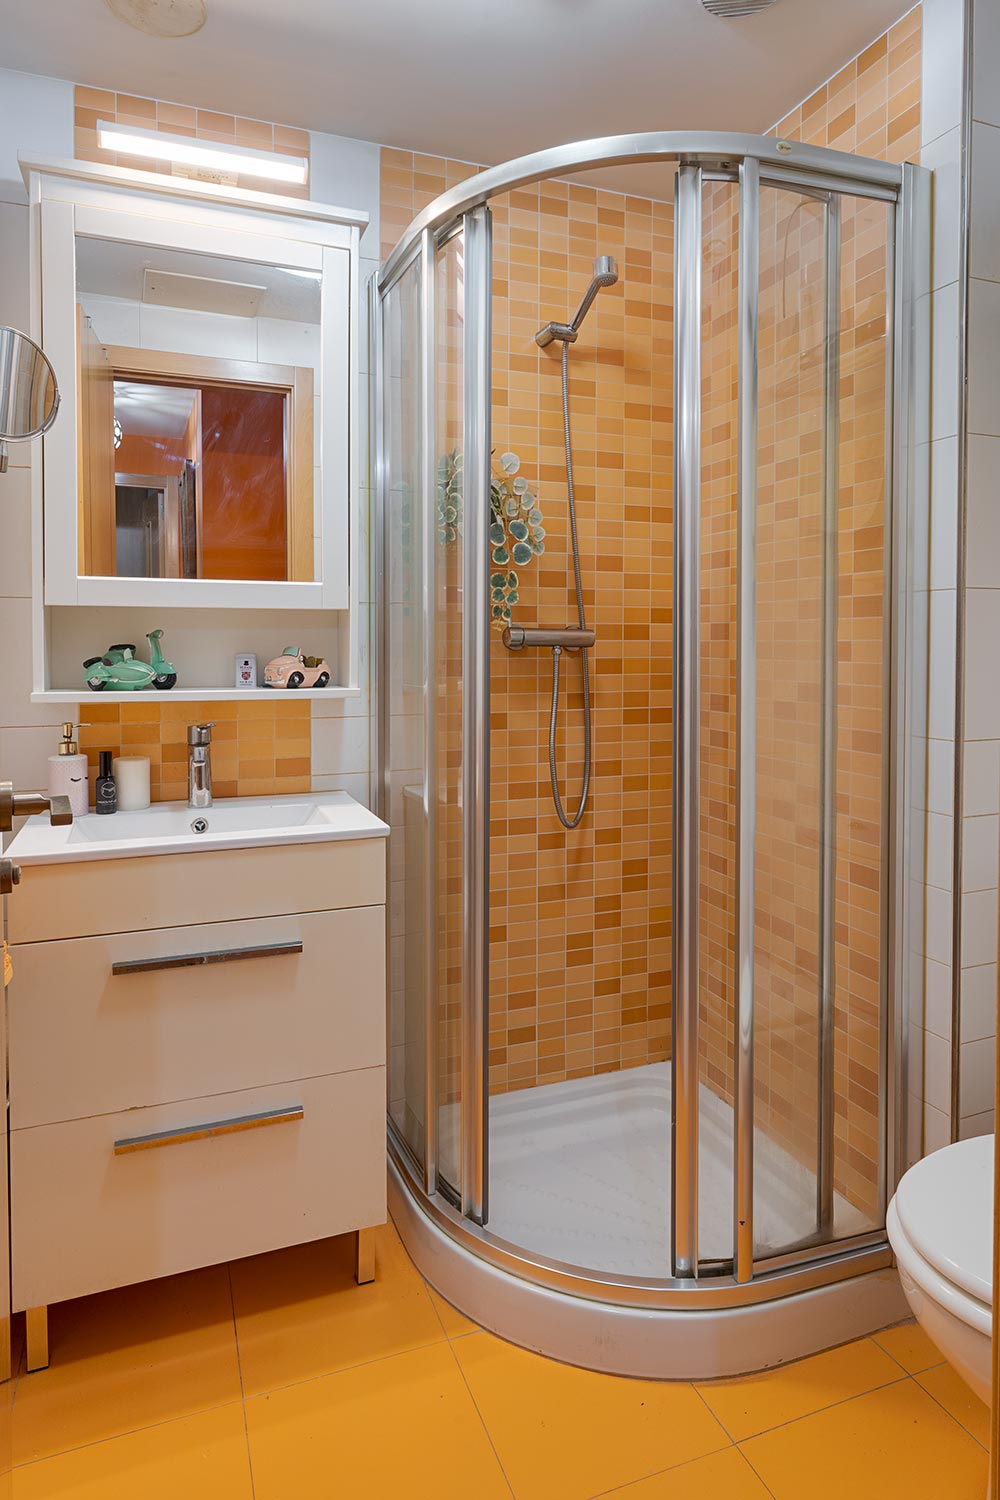 Baño completo con azulejos anaranjados, incluye ducha semicircular con mampara de vidrio, lavabo con mueble blanco y espejo iluminado en Sada